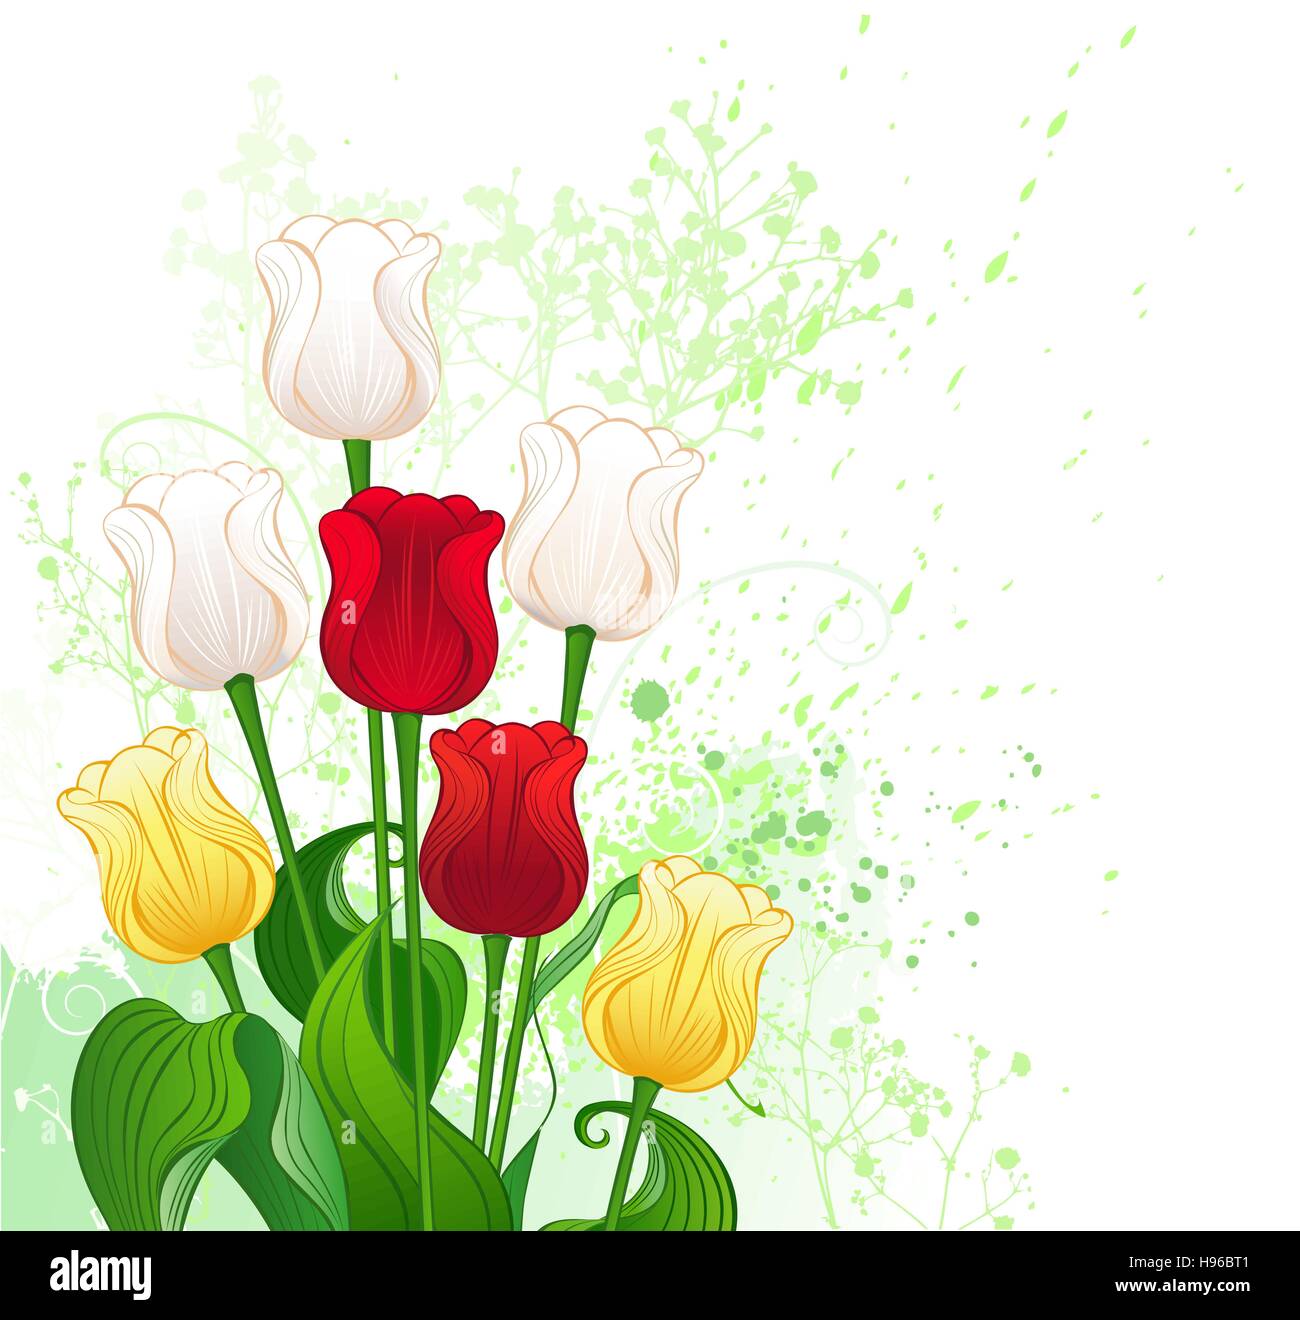 kunstvoll bemalte verziert ein Bouquet von sieben Tulpen, rot, gelb und weiß, mit Zierpflanzen und ein Tropfen grüne Farbe. Stock Vektor